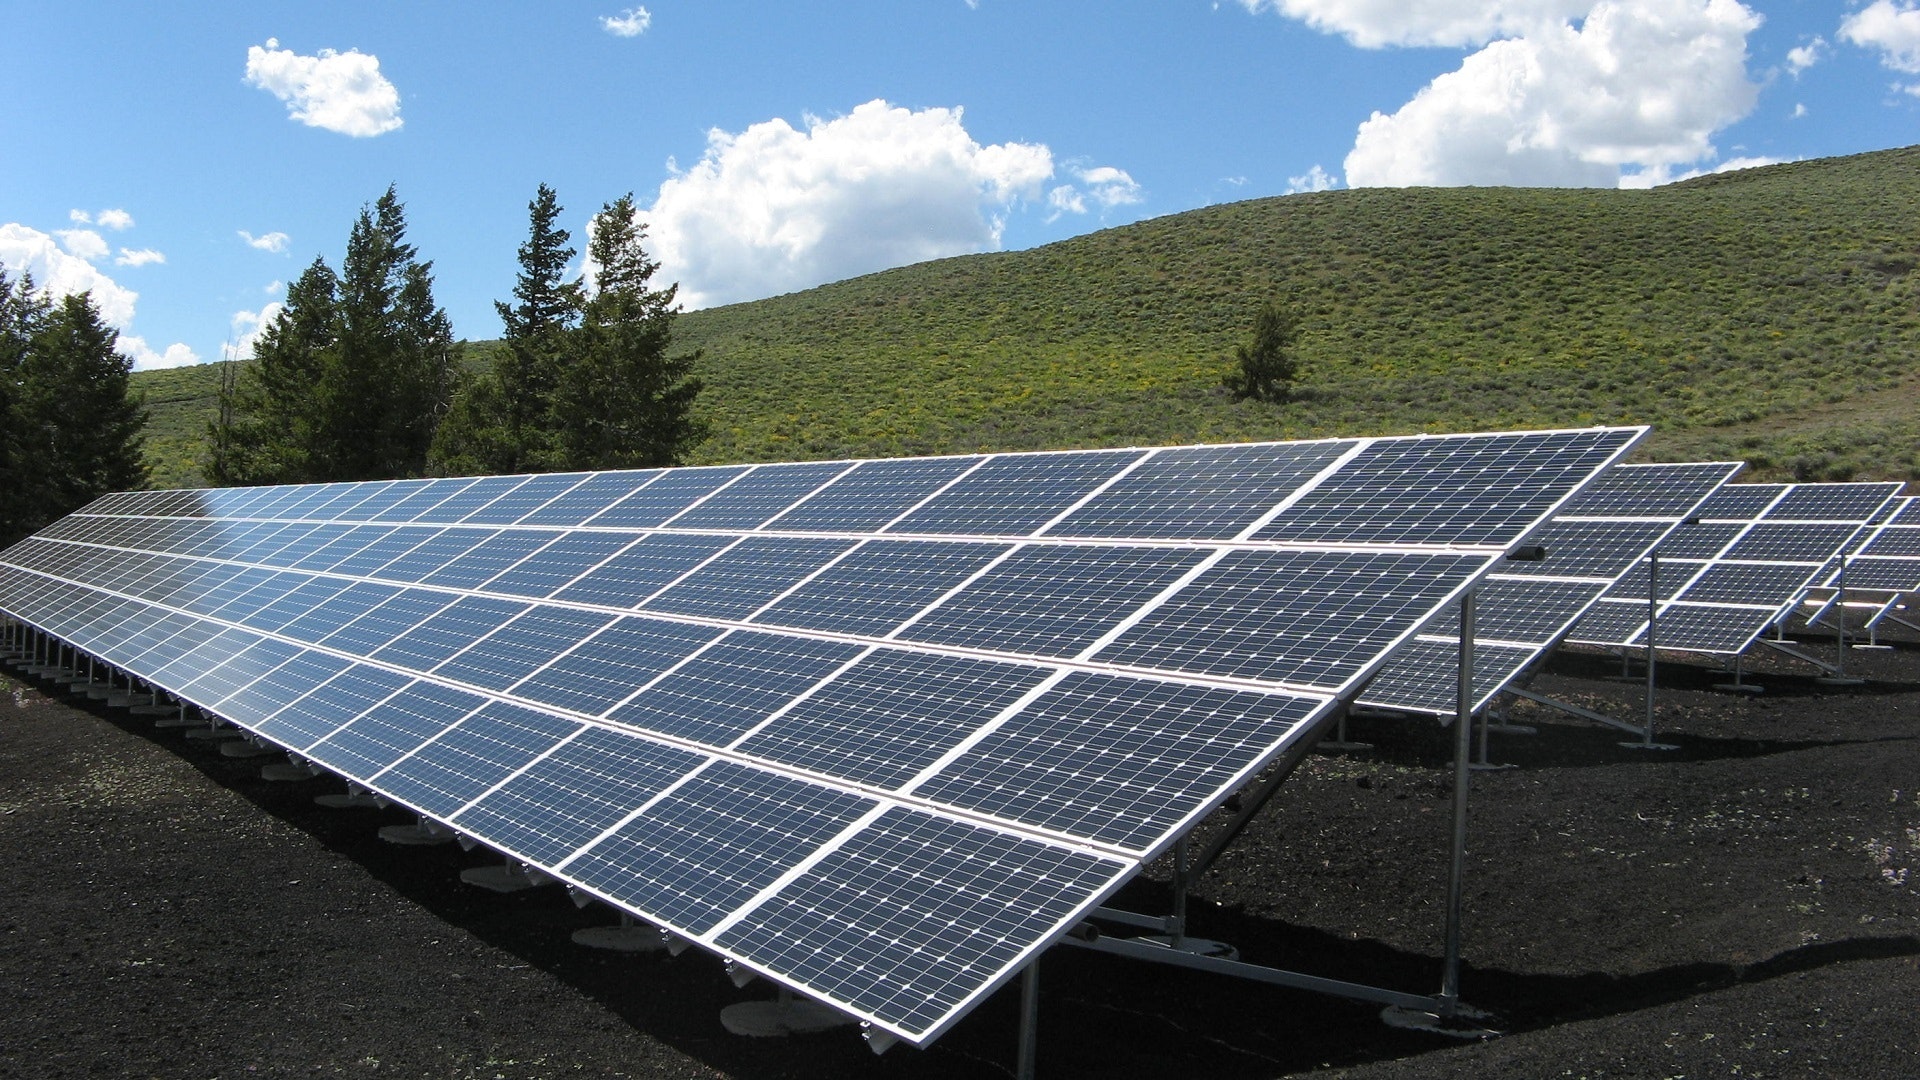 Pravidelným čištěním solárních panelů zvýšíte jejich účinnost i životnost